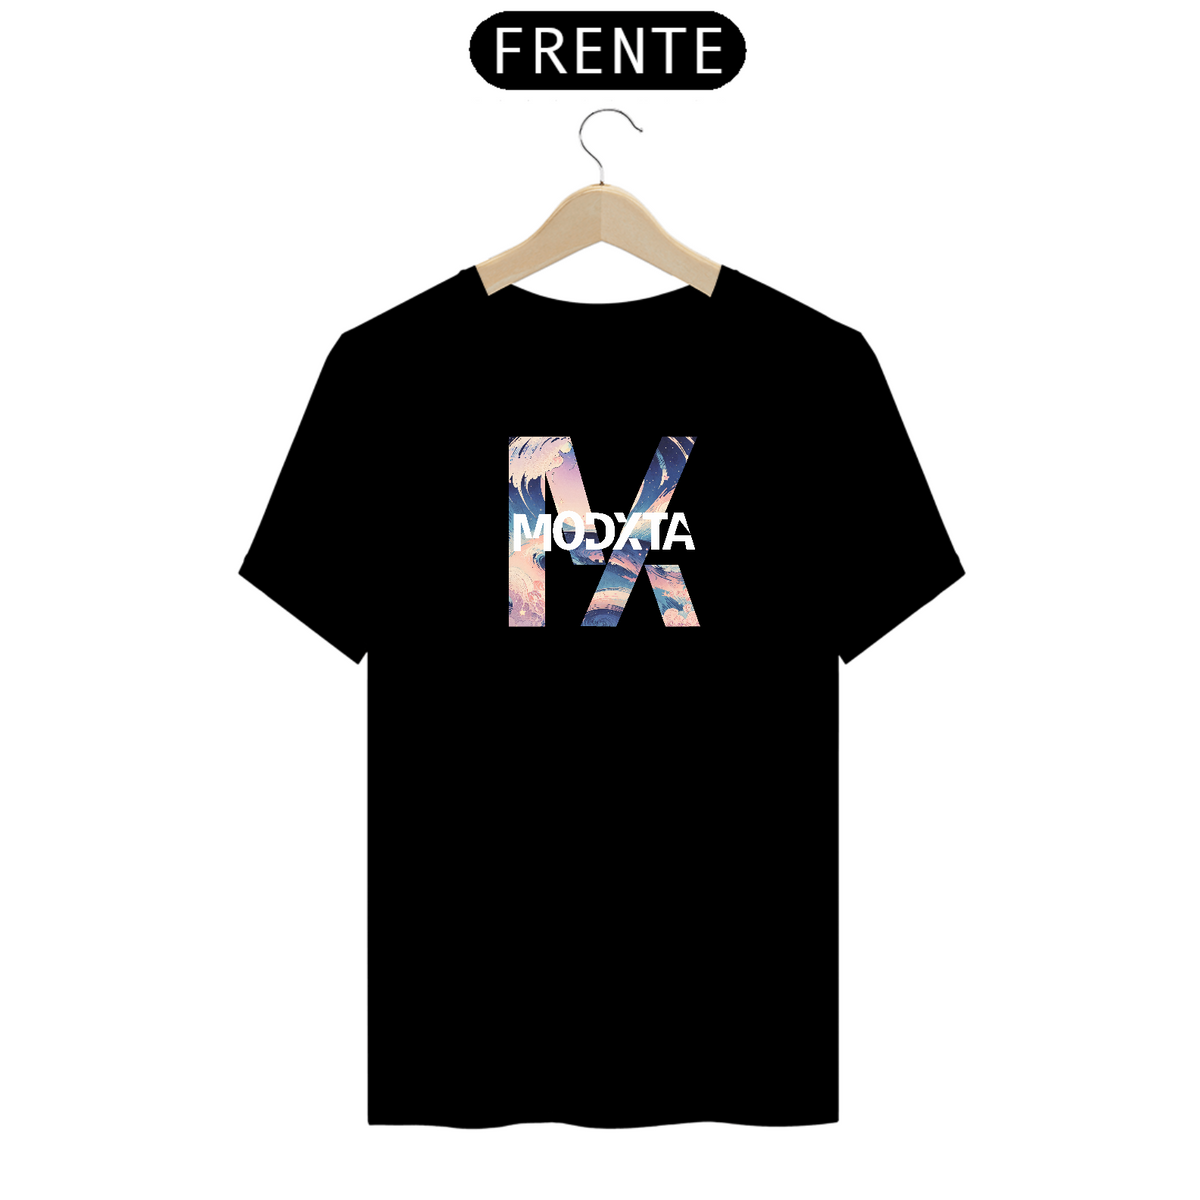 Nome do produto: Camisetas T-Shirt Premium com Estampas Artísticas colorida MODXTA Preta